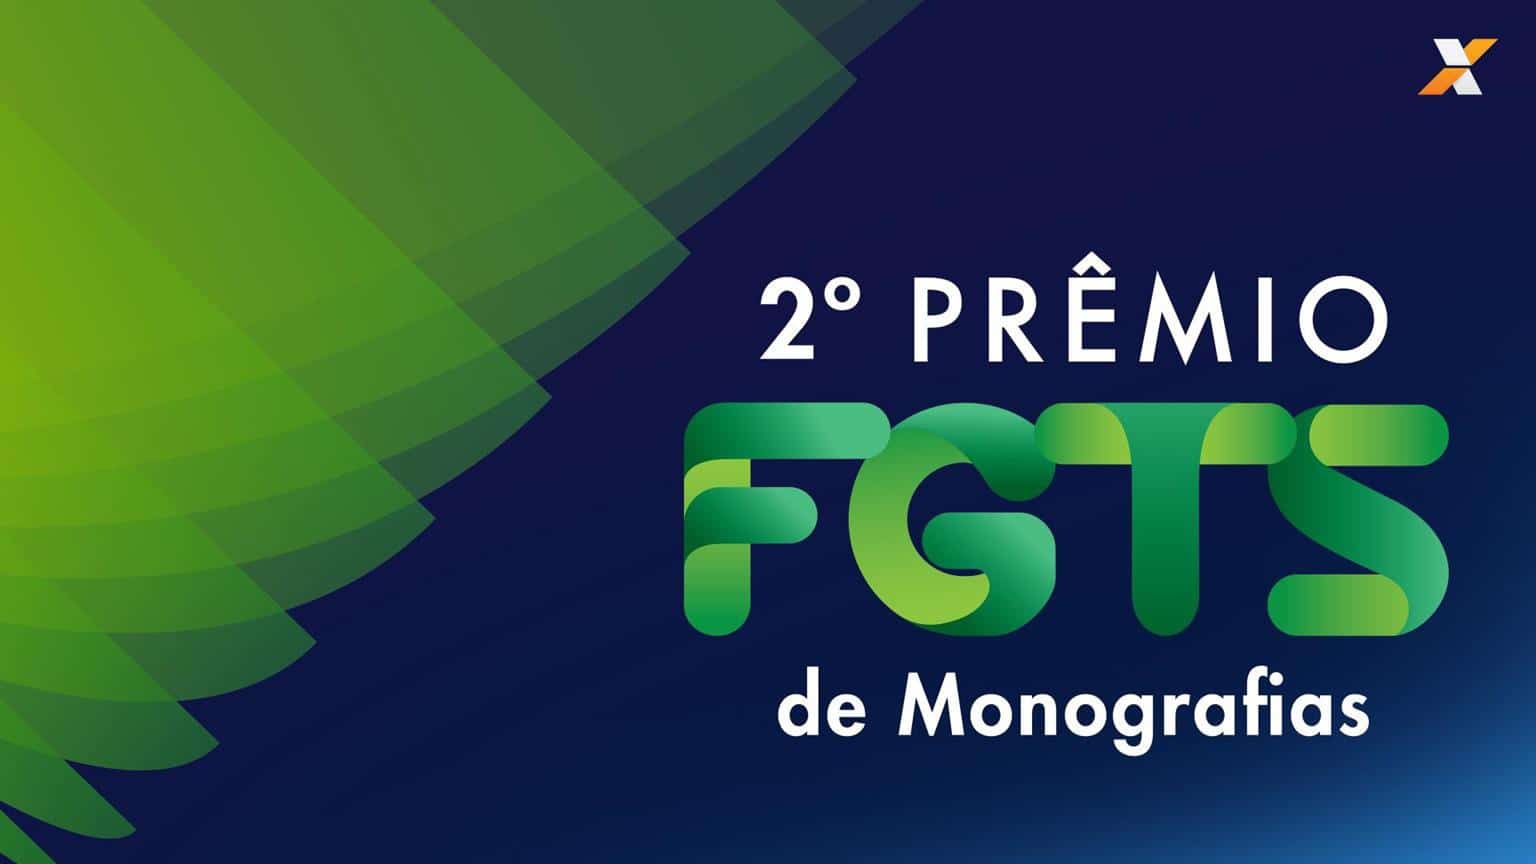 Prêmio FGTS de Monografias 2018 - 2a. Edição